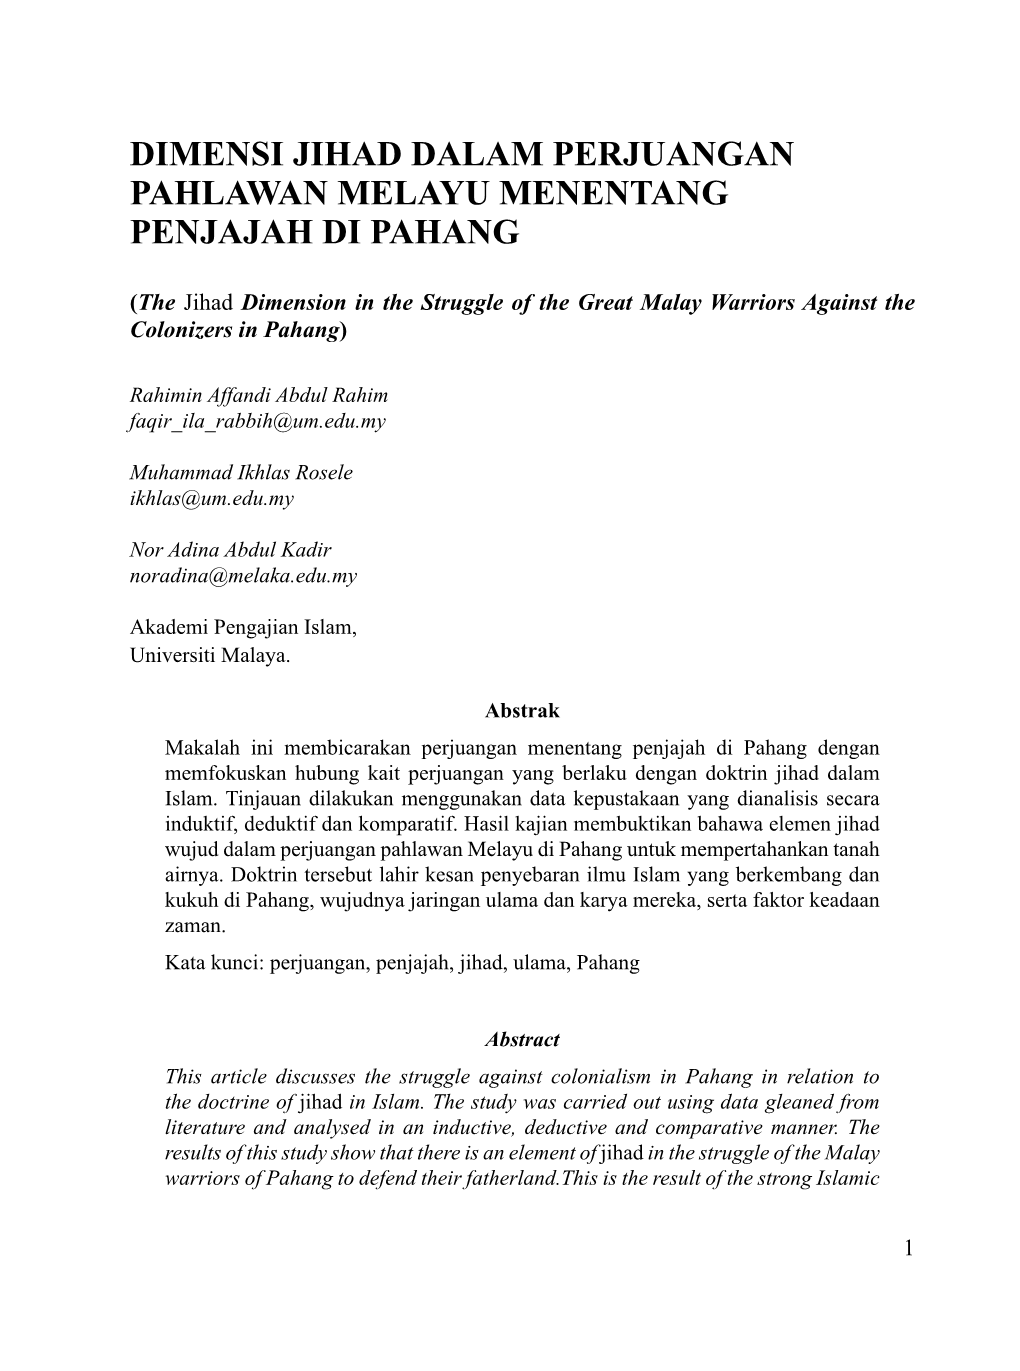 Dimensi Jihad Dalam Perjuangan Pahlawan Melayu Menentang Penjajah Di Pahang